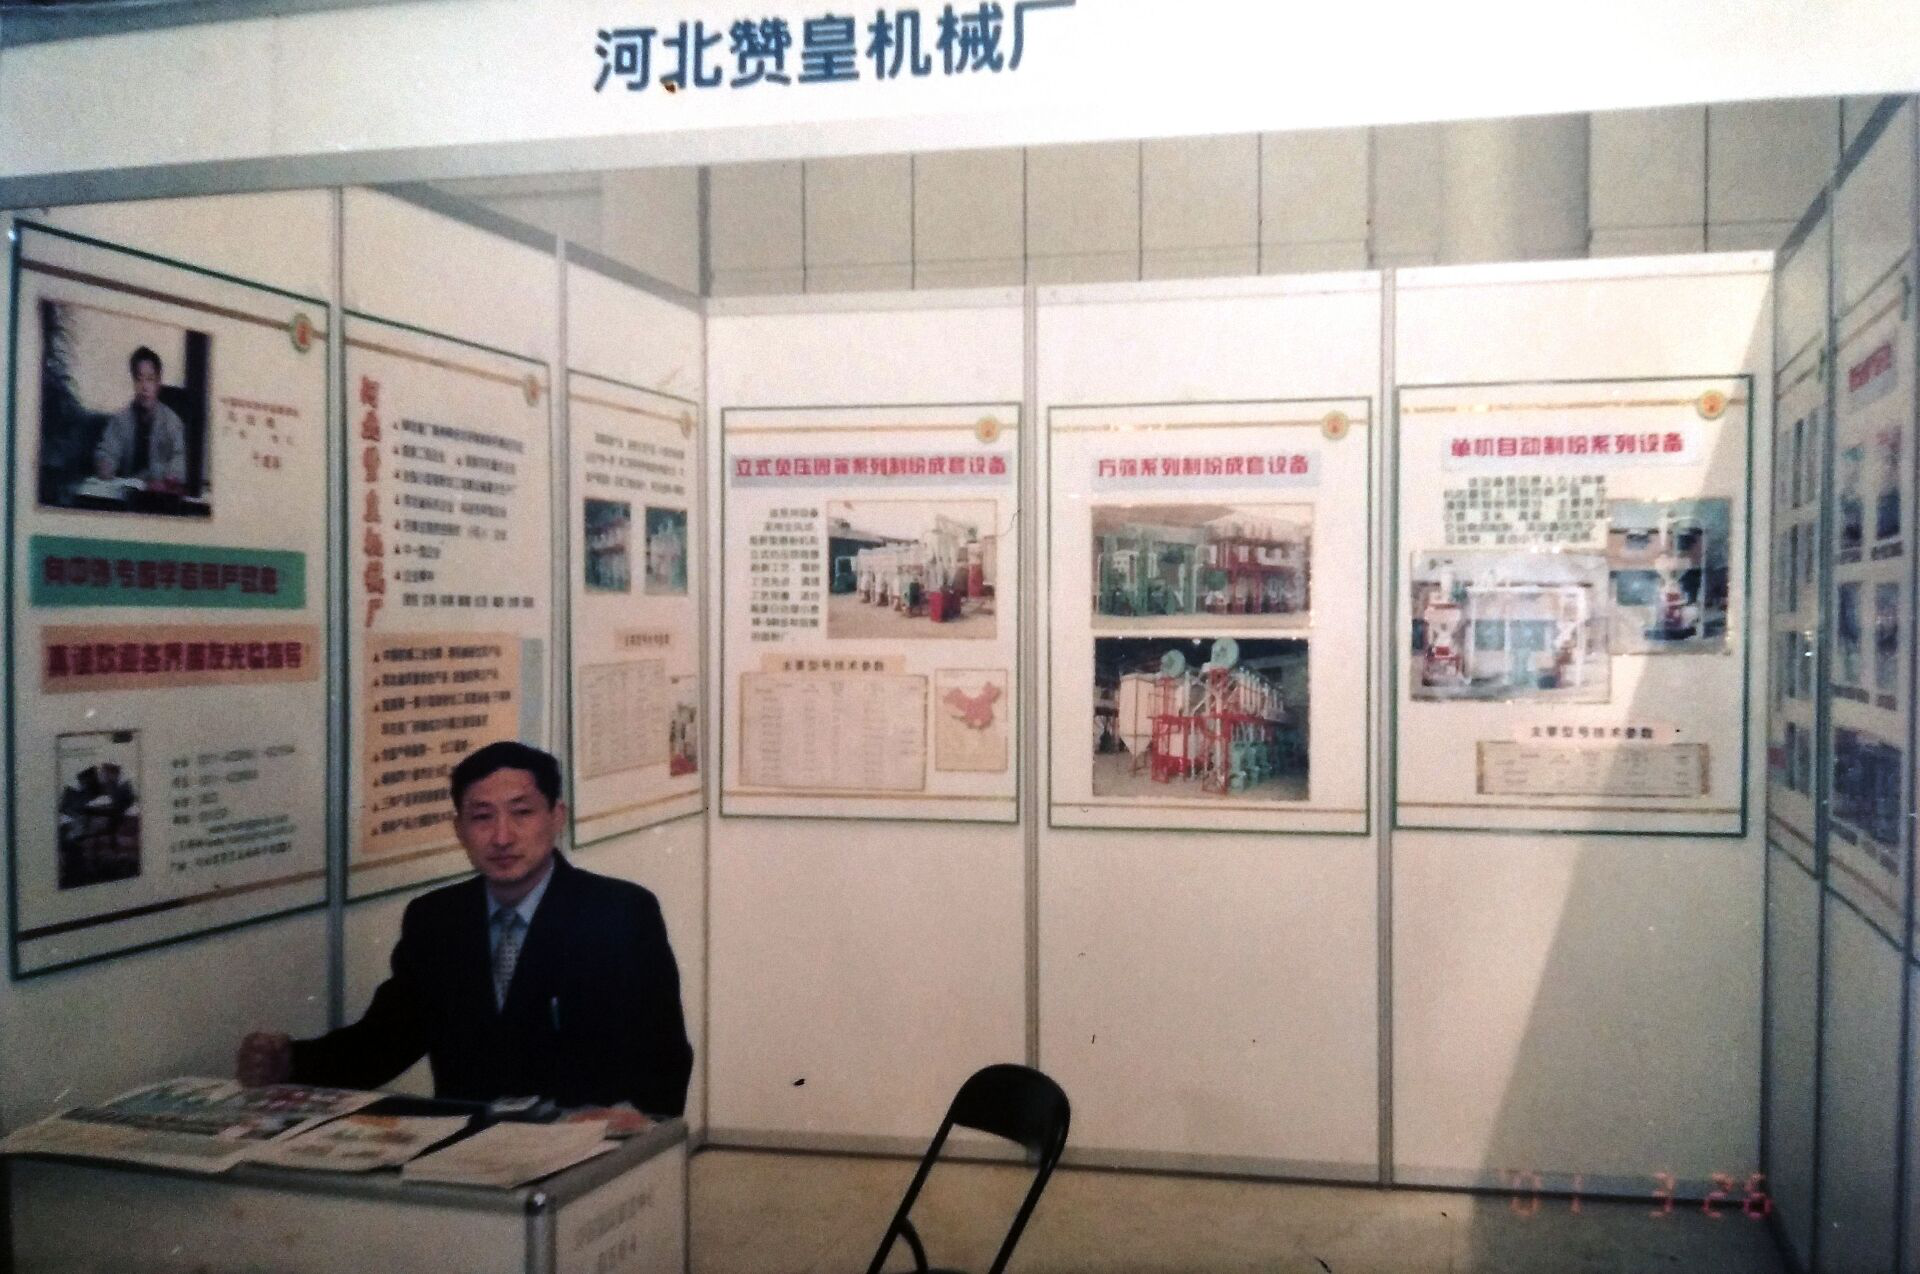 Beijing Exhibition